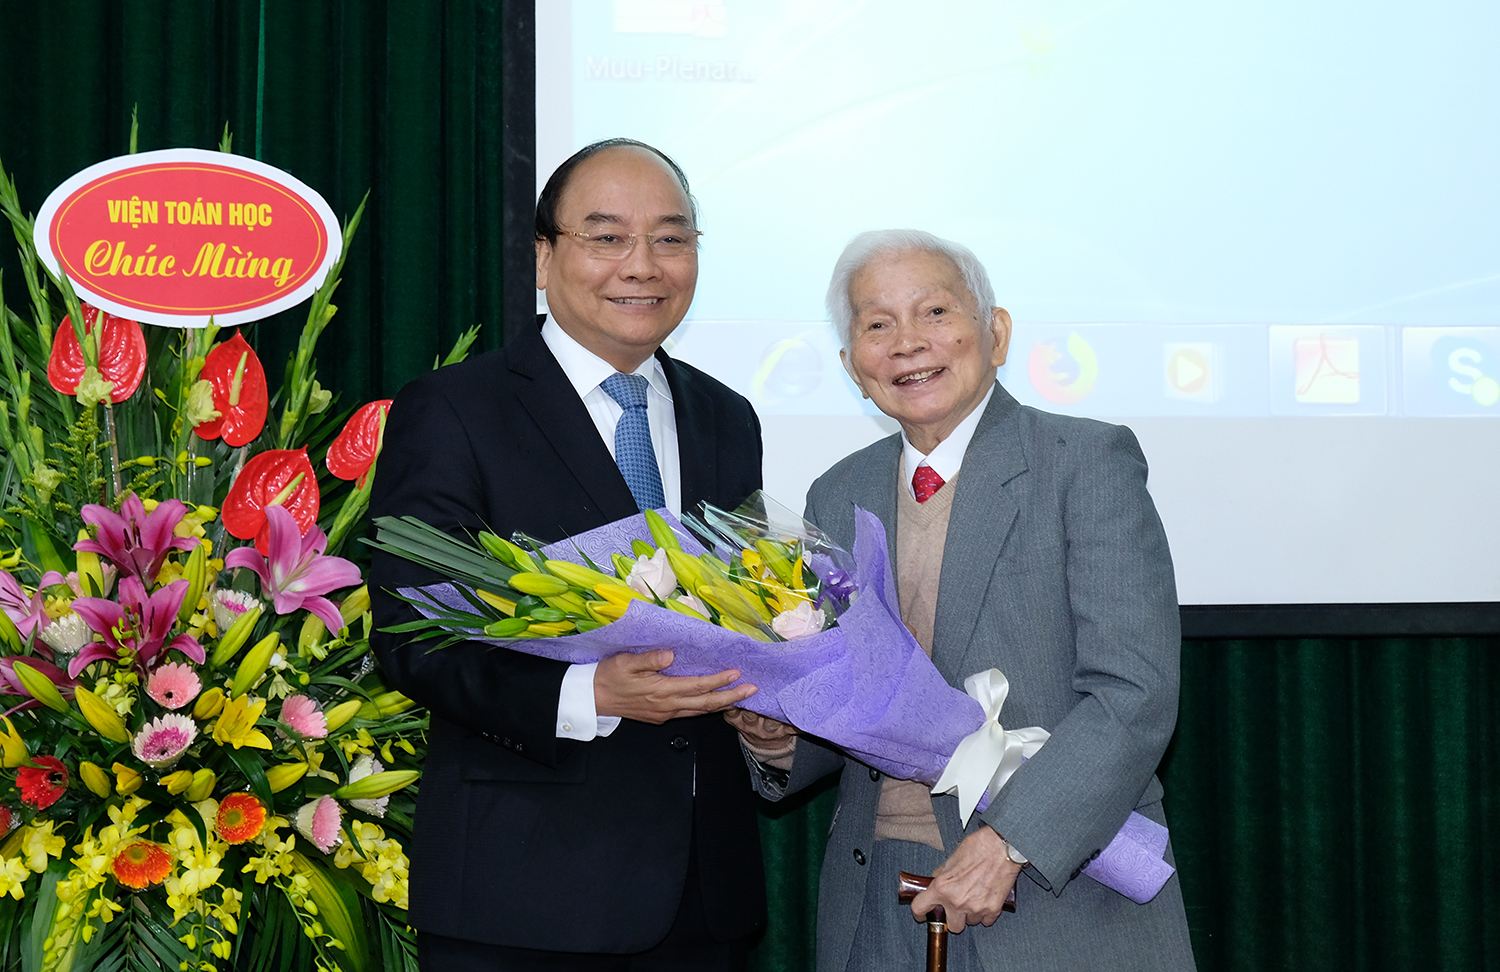 Thủ tướng Nguyễn Xuân Phúc chúc mừng sinh nhật và những đóng góp của GS. Hoàng Tụy cho nền toán học Việt Nam. Ảnh: VGP/Quang Hiếu